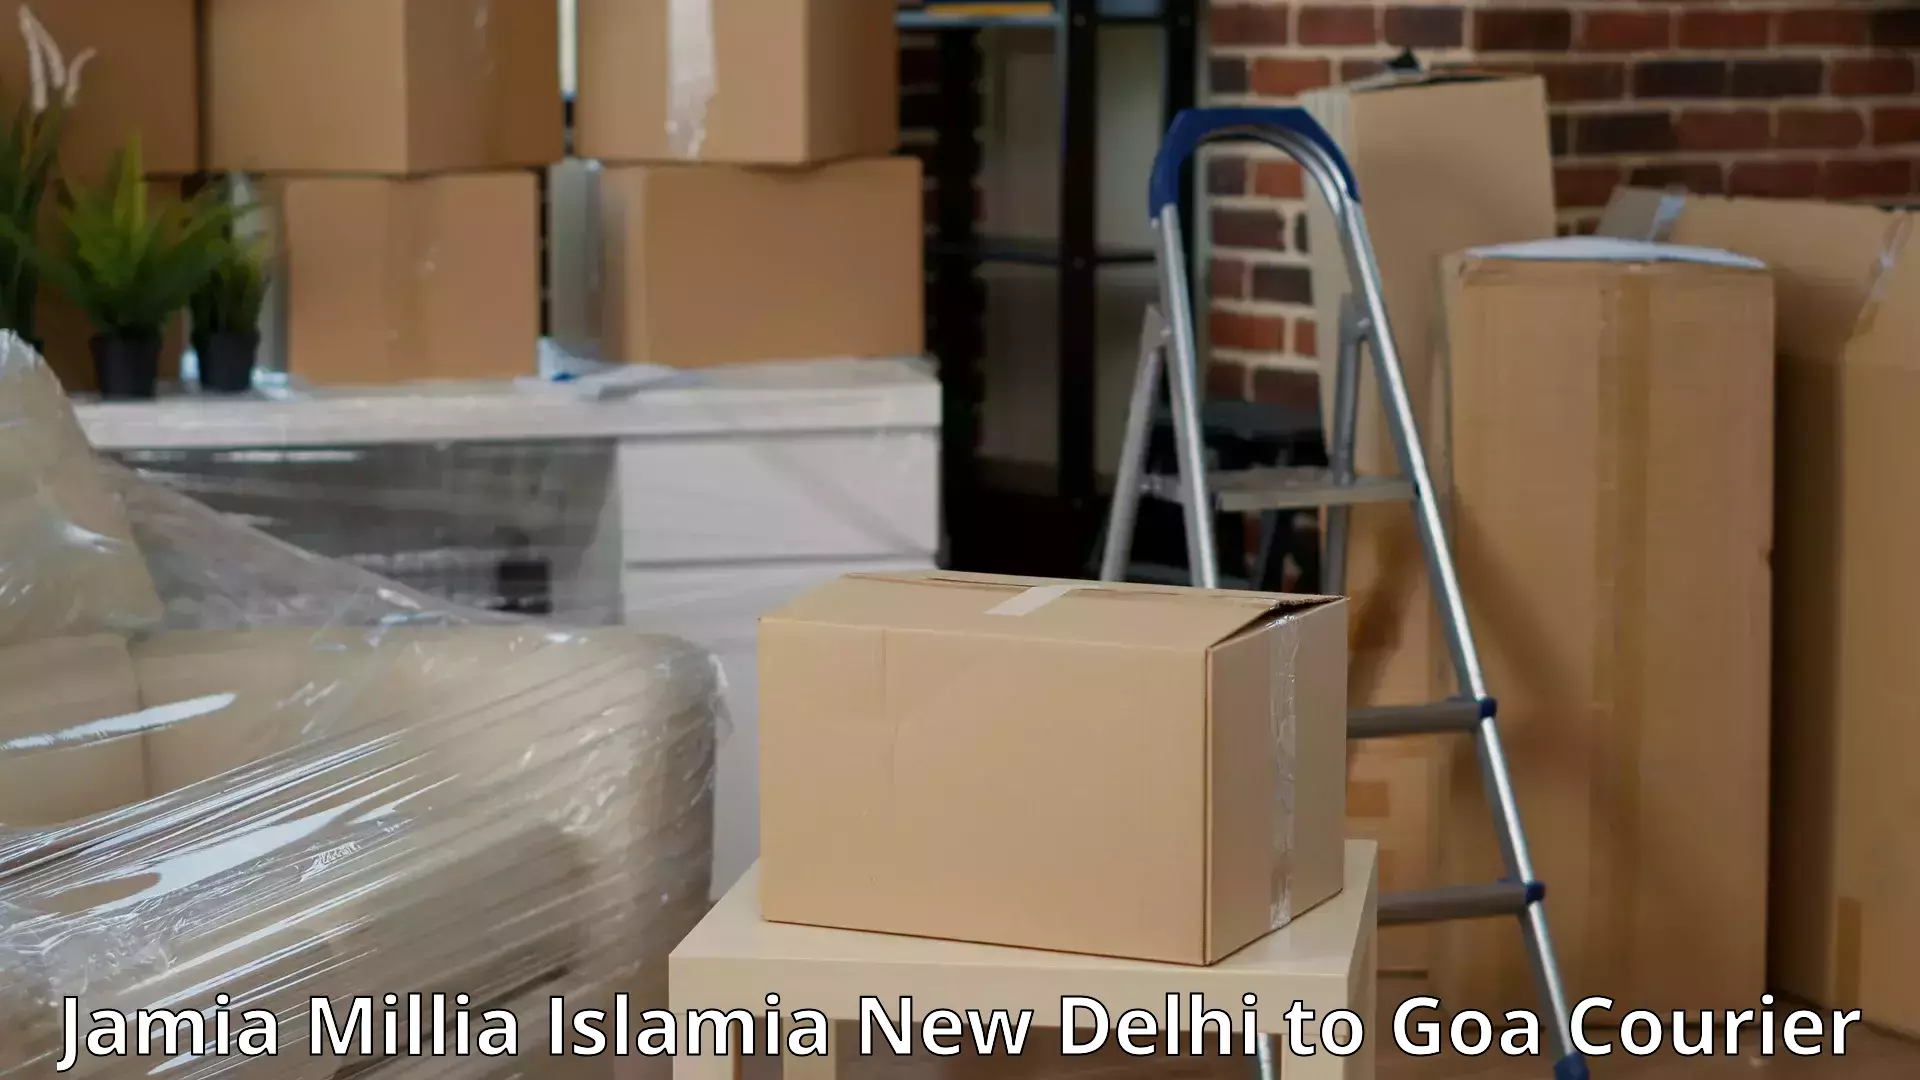 Trusted relocation services Jamia Millia Islamia New Delhi to Goa